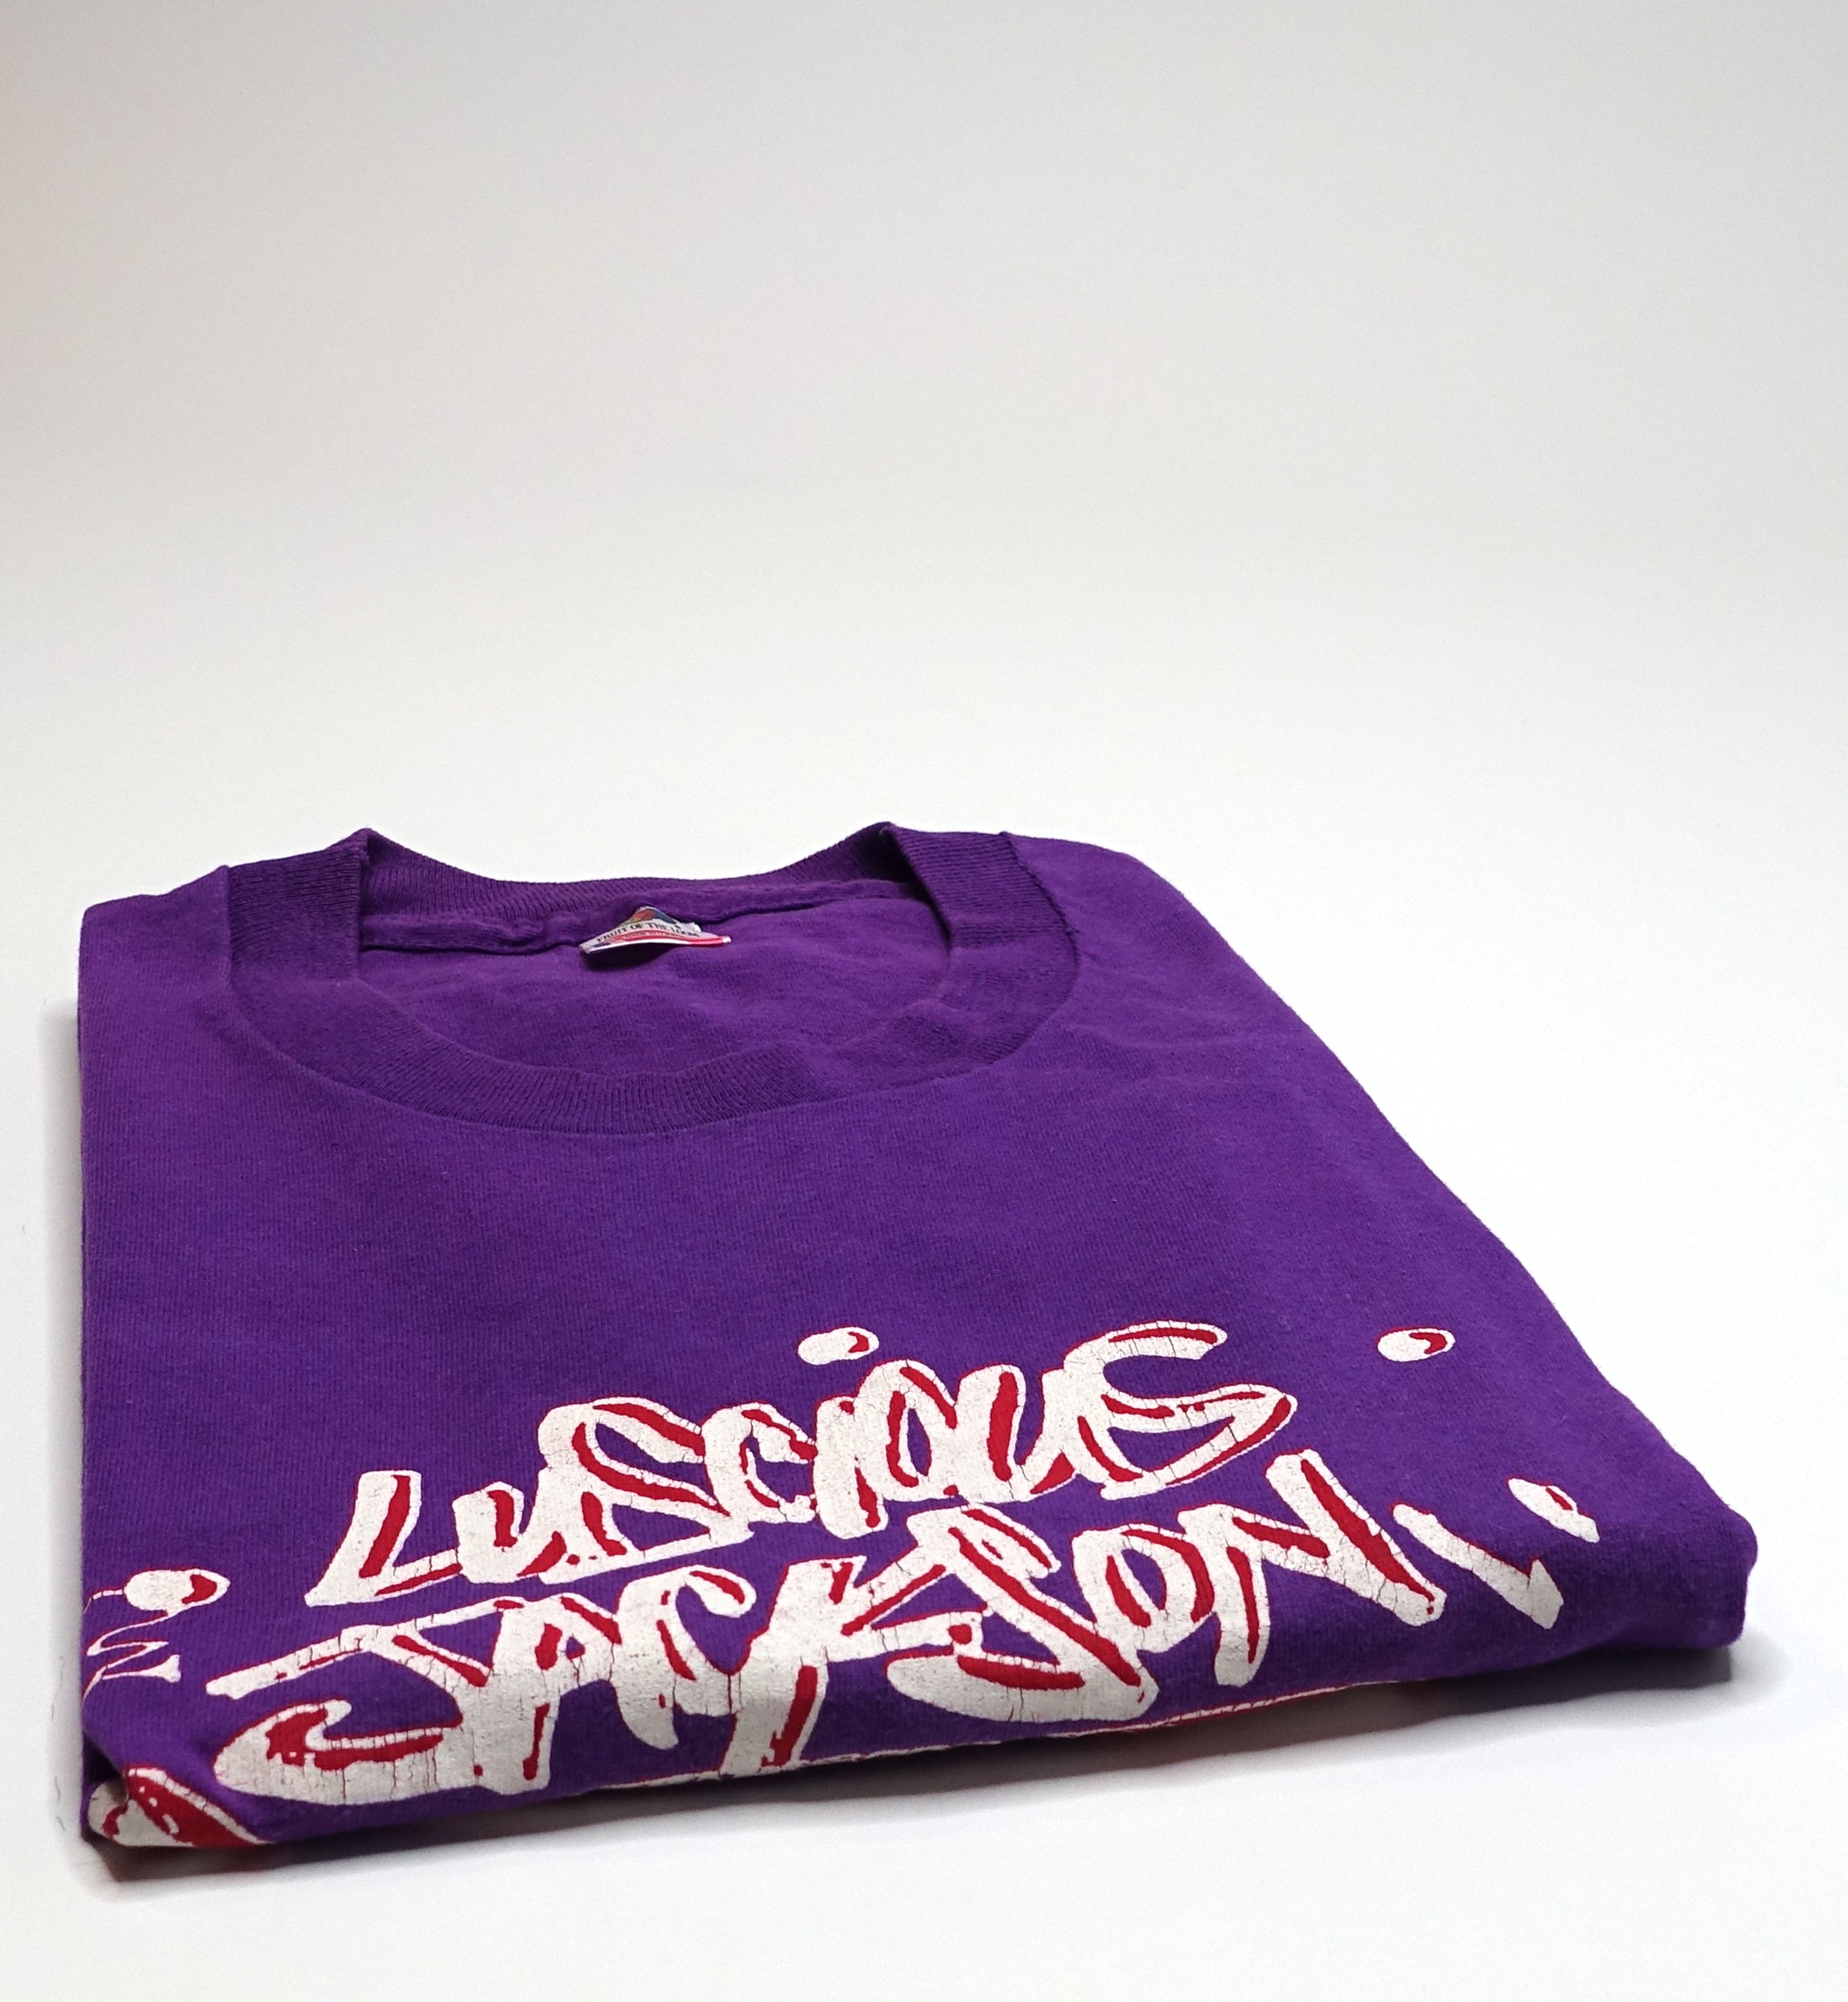 Luscious Jackson - Grafitti Tag Logo 90's Tour Shirt Size XL